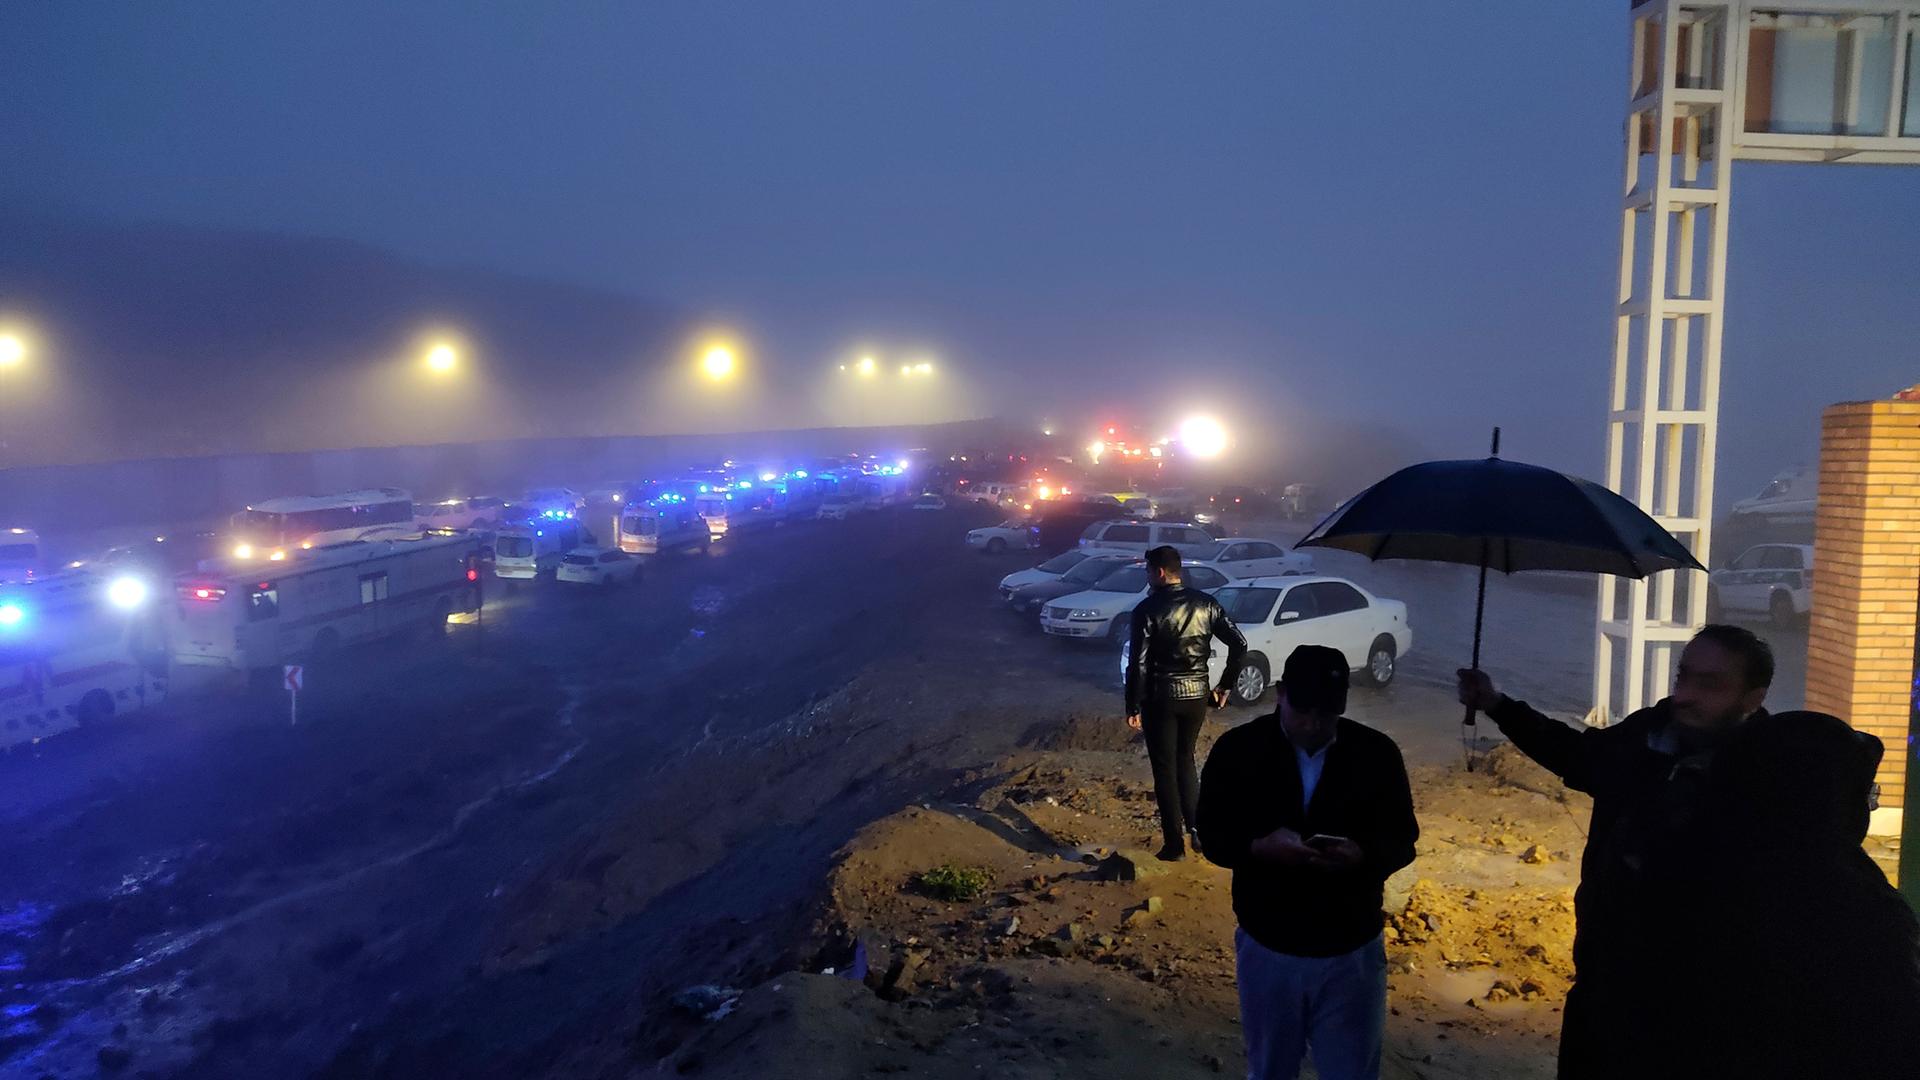 Einsatzfahrzeuge stehen nach dem Unglück mit einem Hubschrauber im Iran im Nebel. Im Vordergrund sind Menschen mit einem Regenschirm zu sehen. 